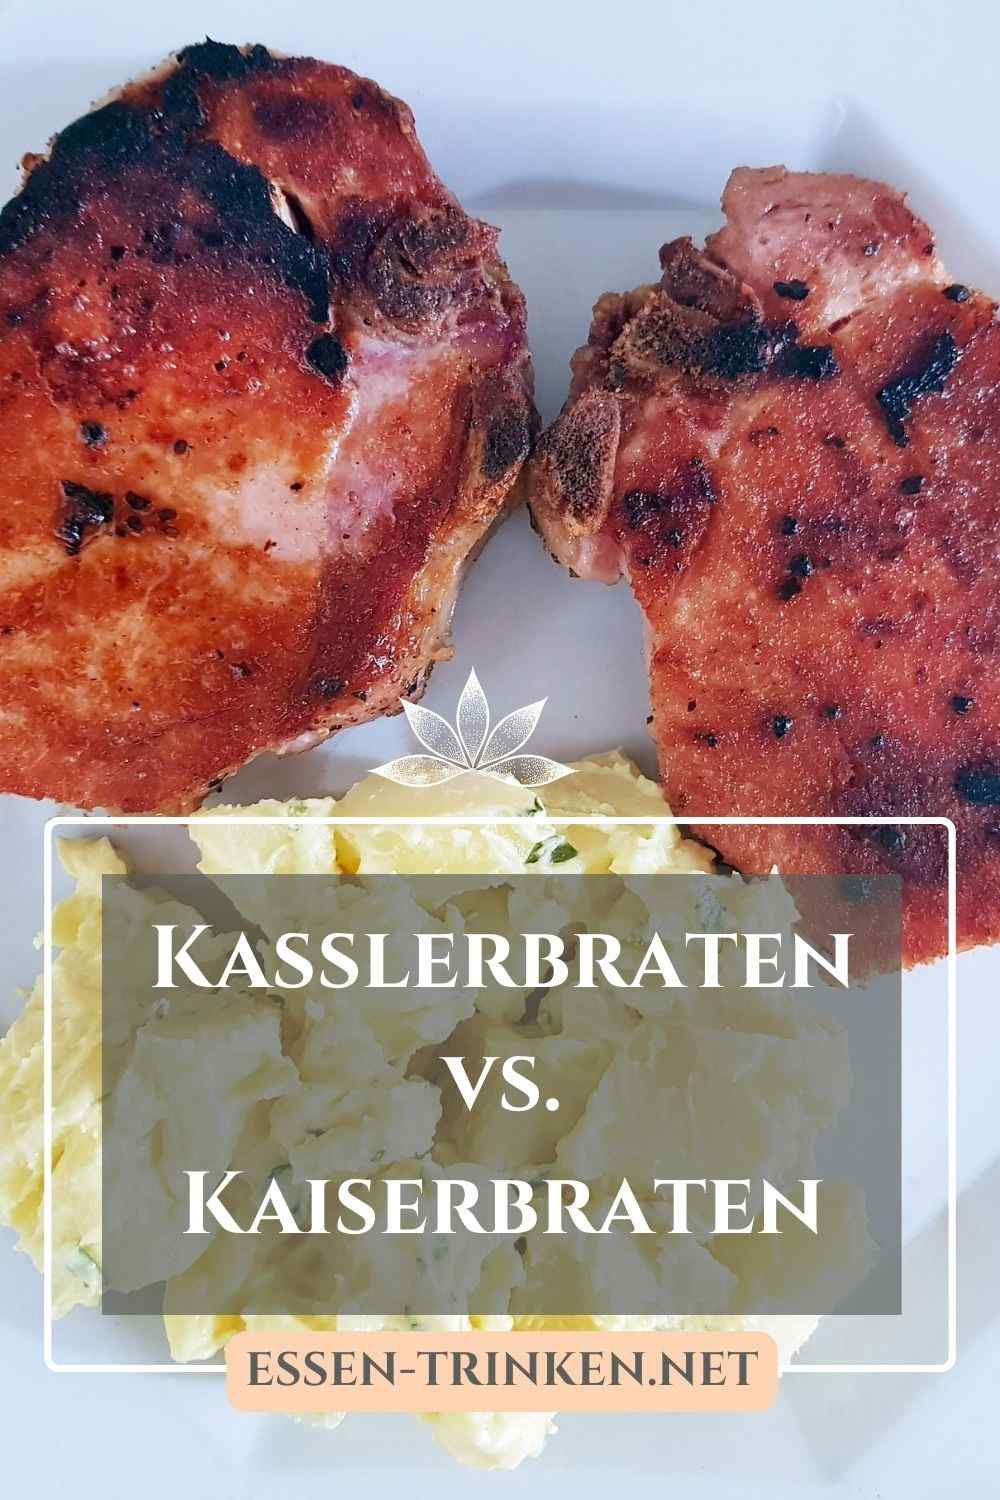 Kasslerbraten vs. Kaiserbraten